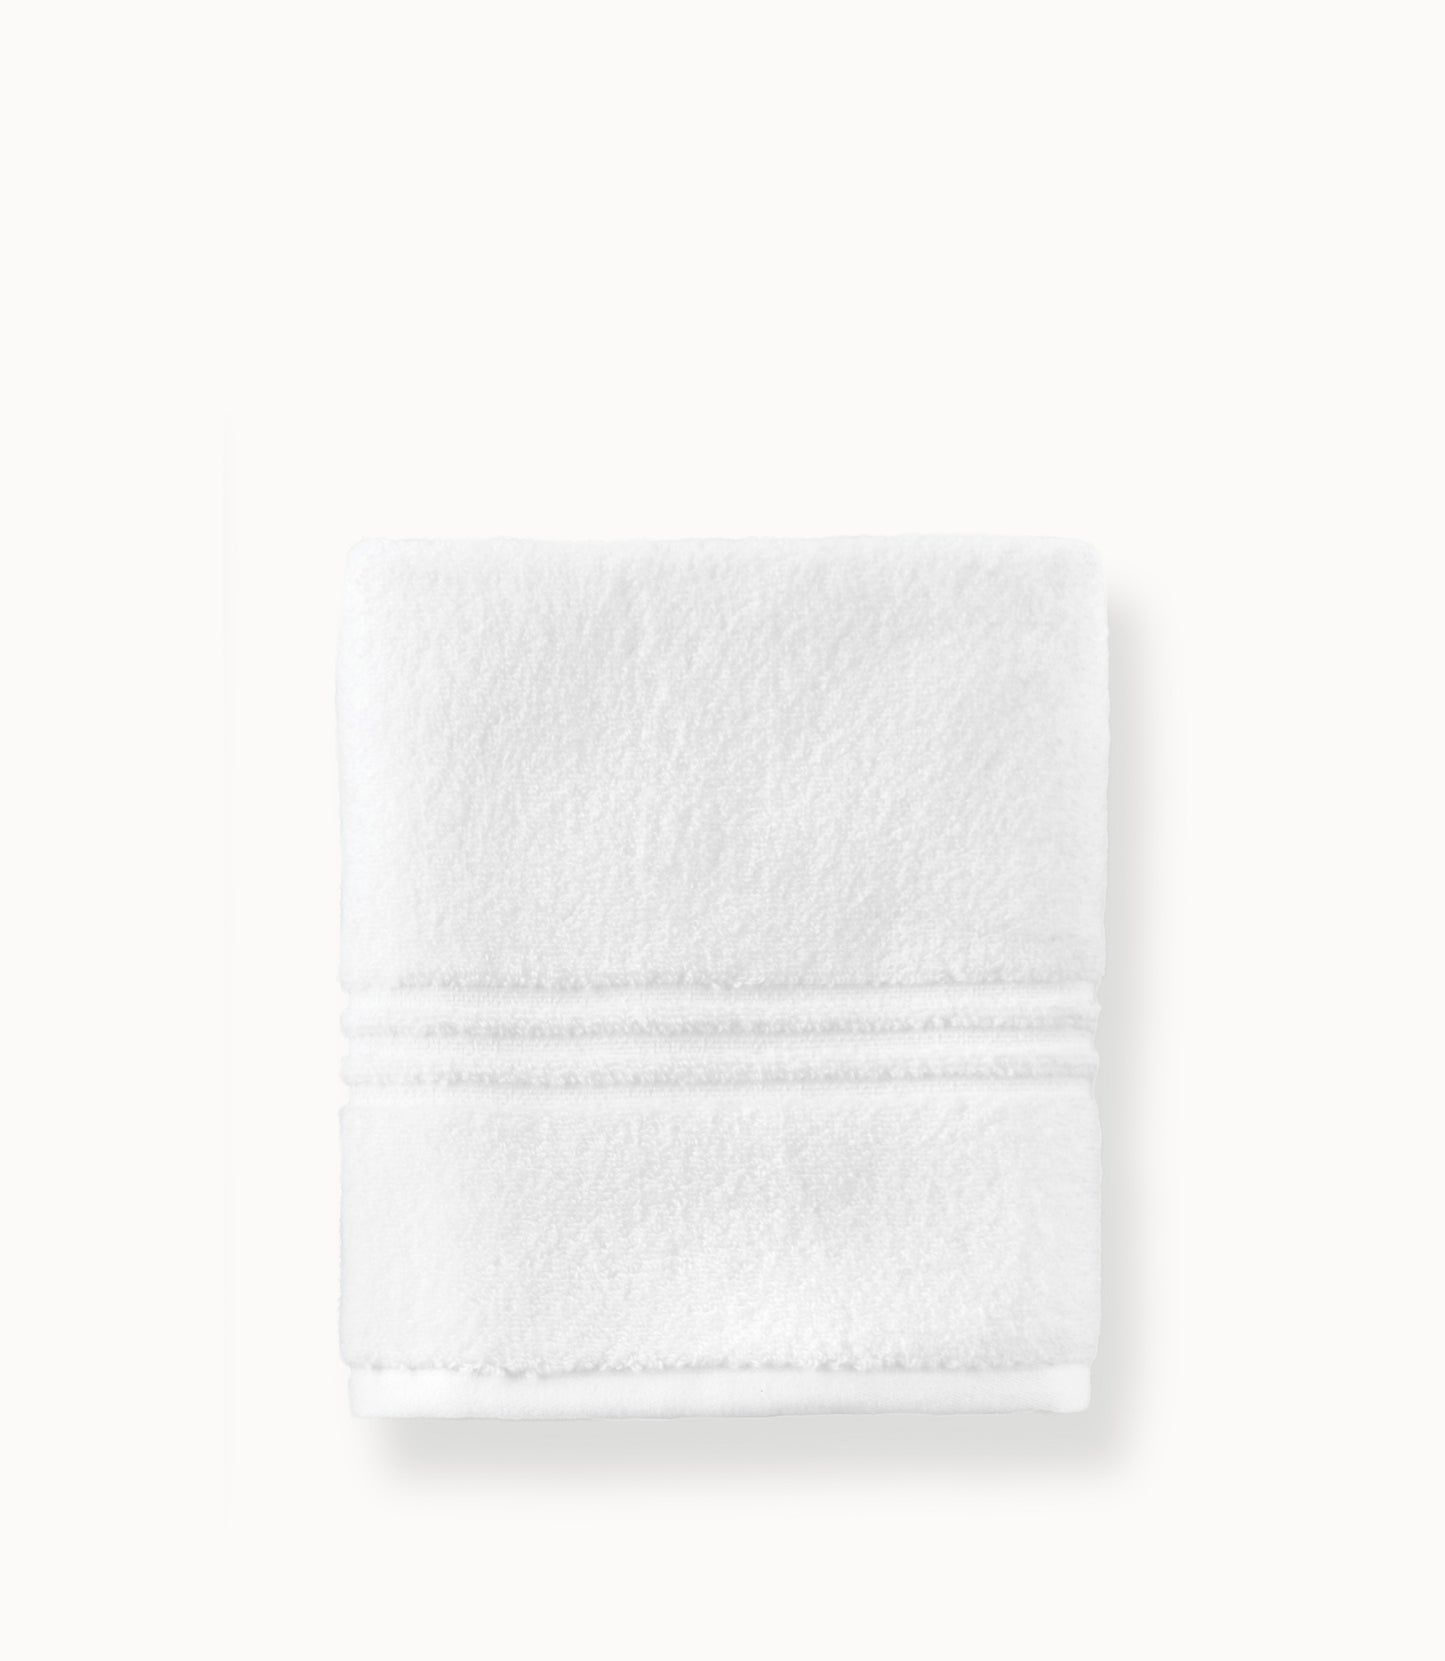 Chelsea Hand Towel, Hand